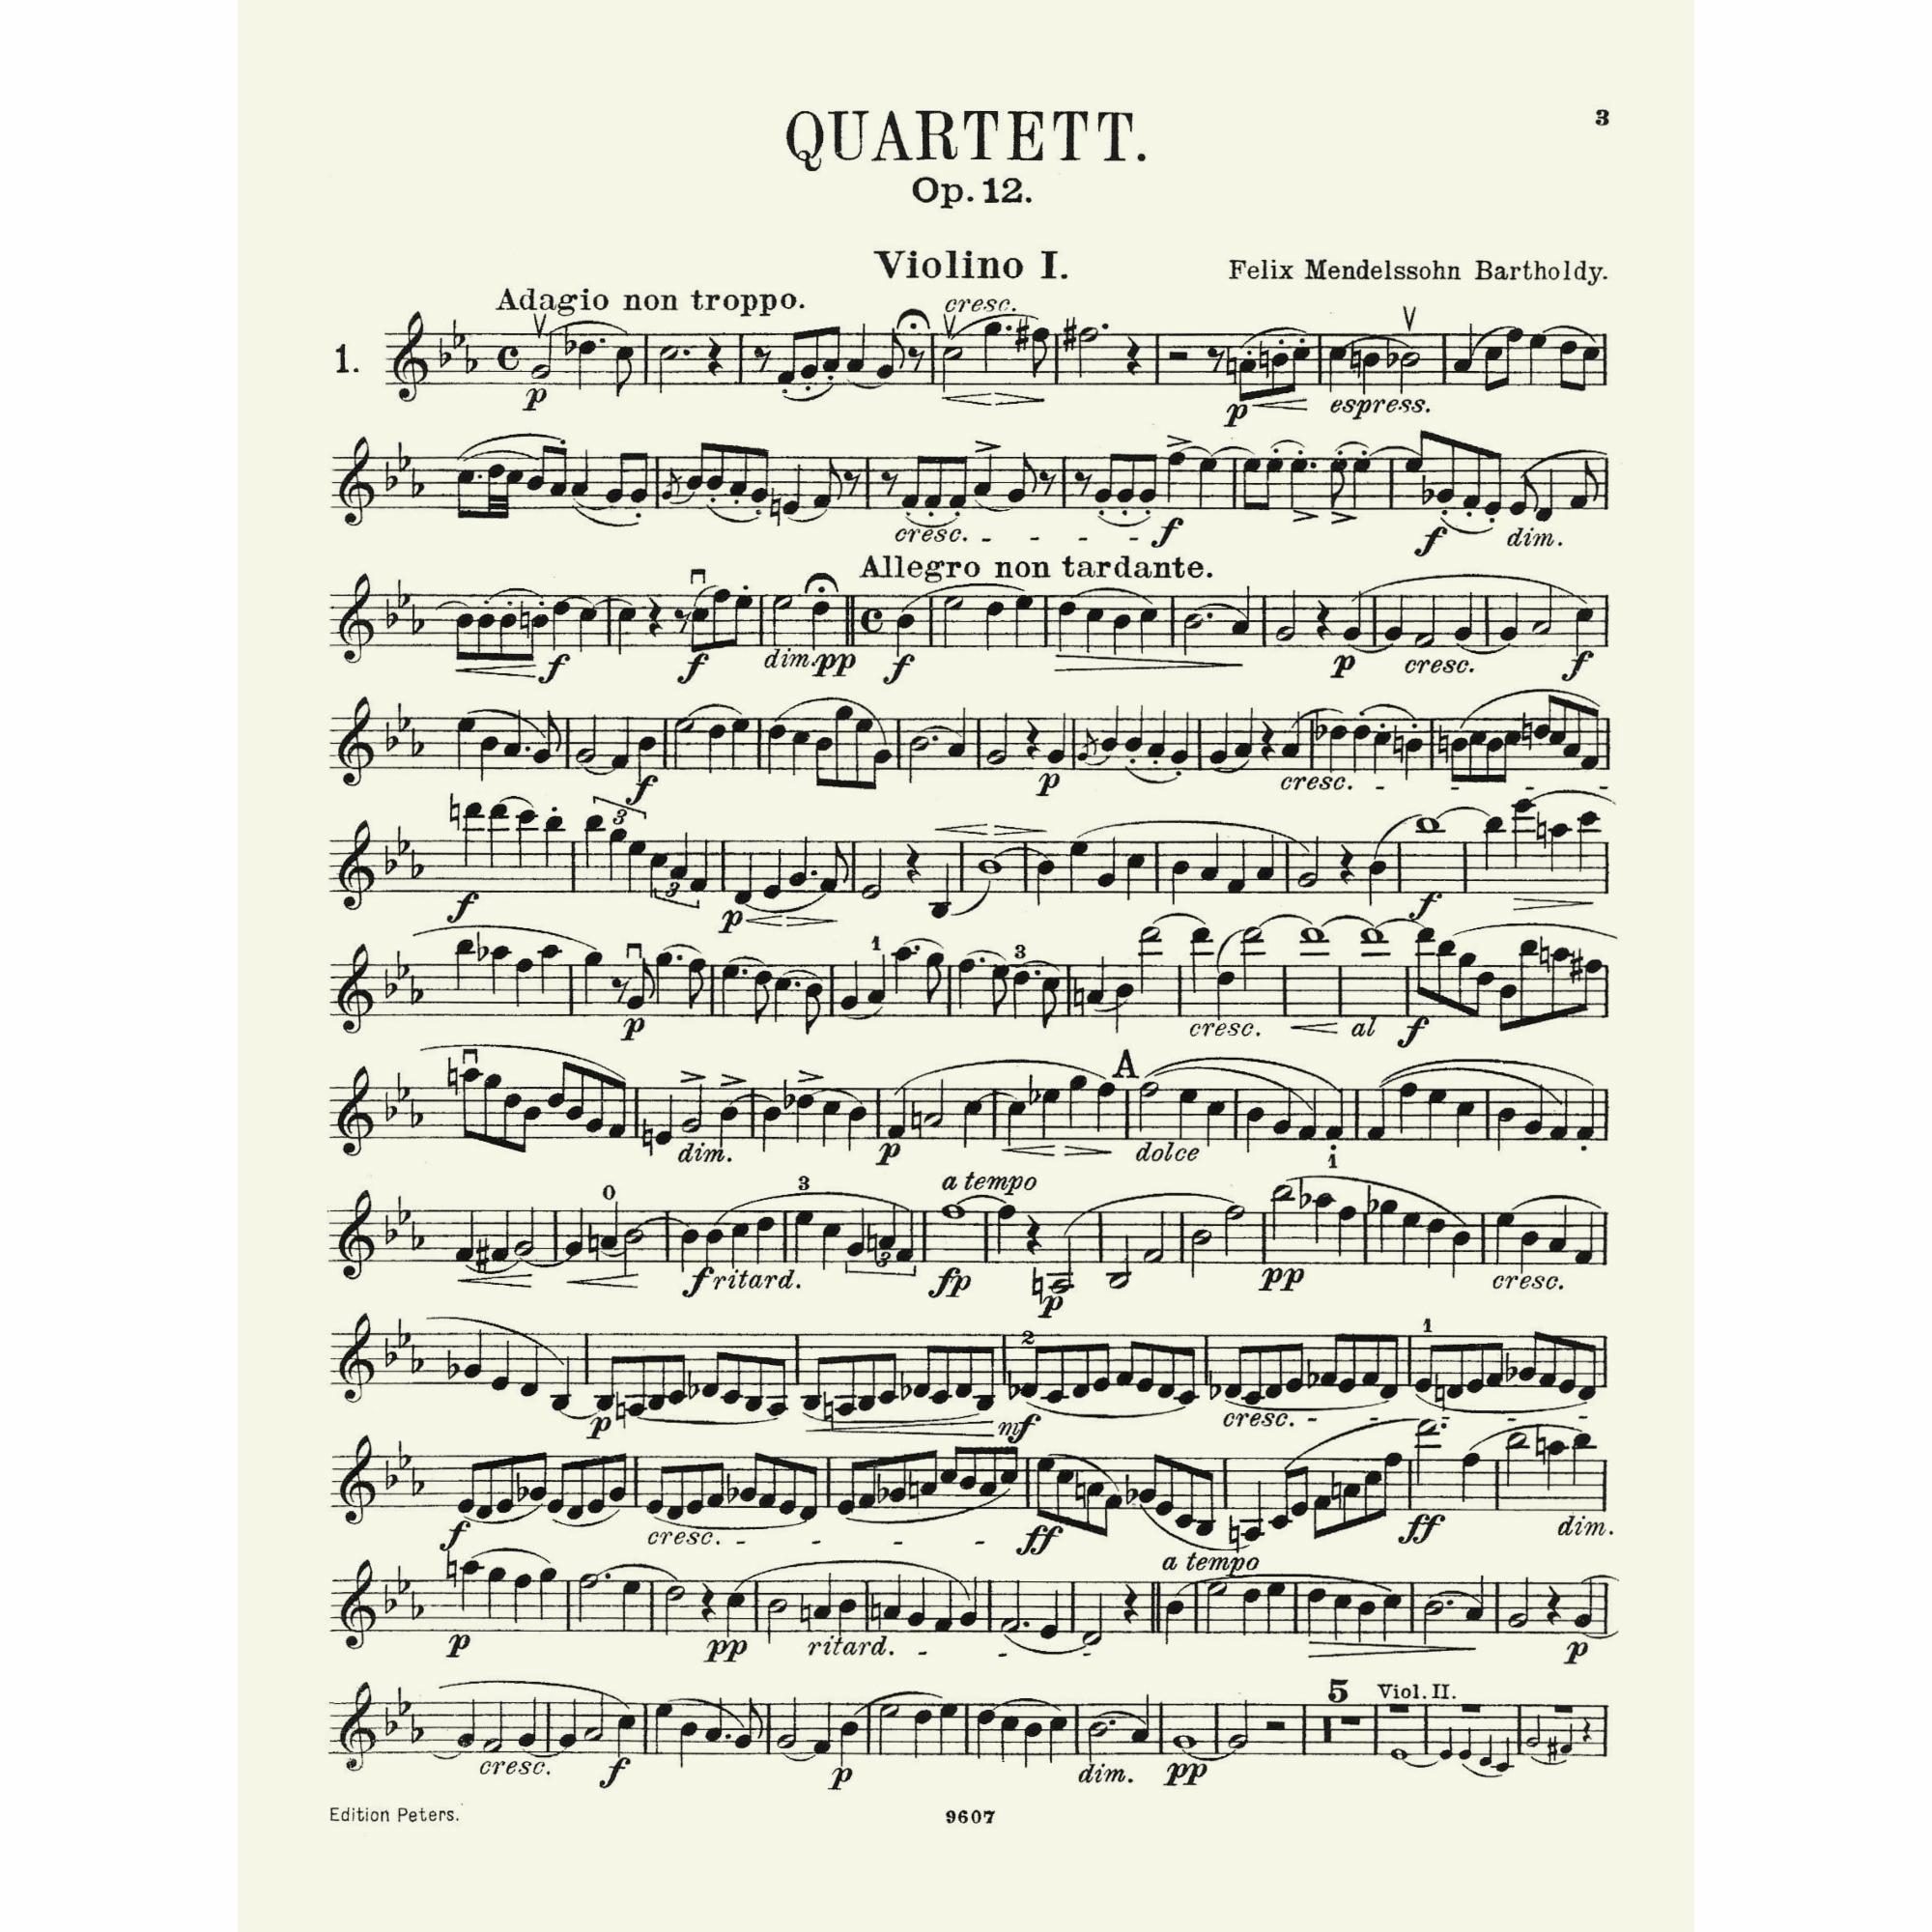 Sample: Violin I (Pg. 3)